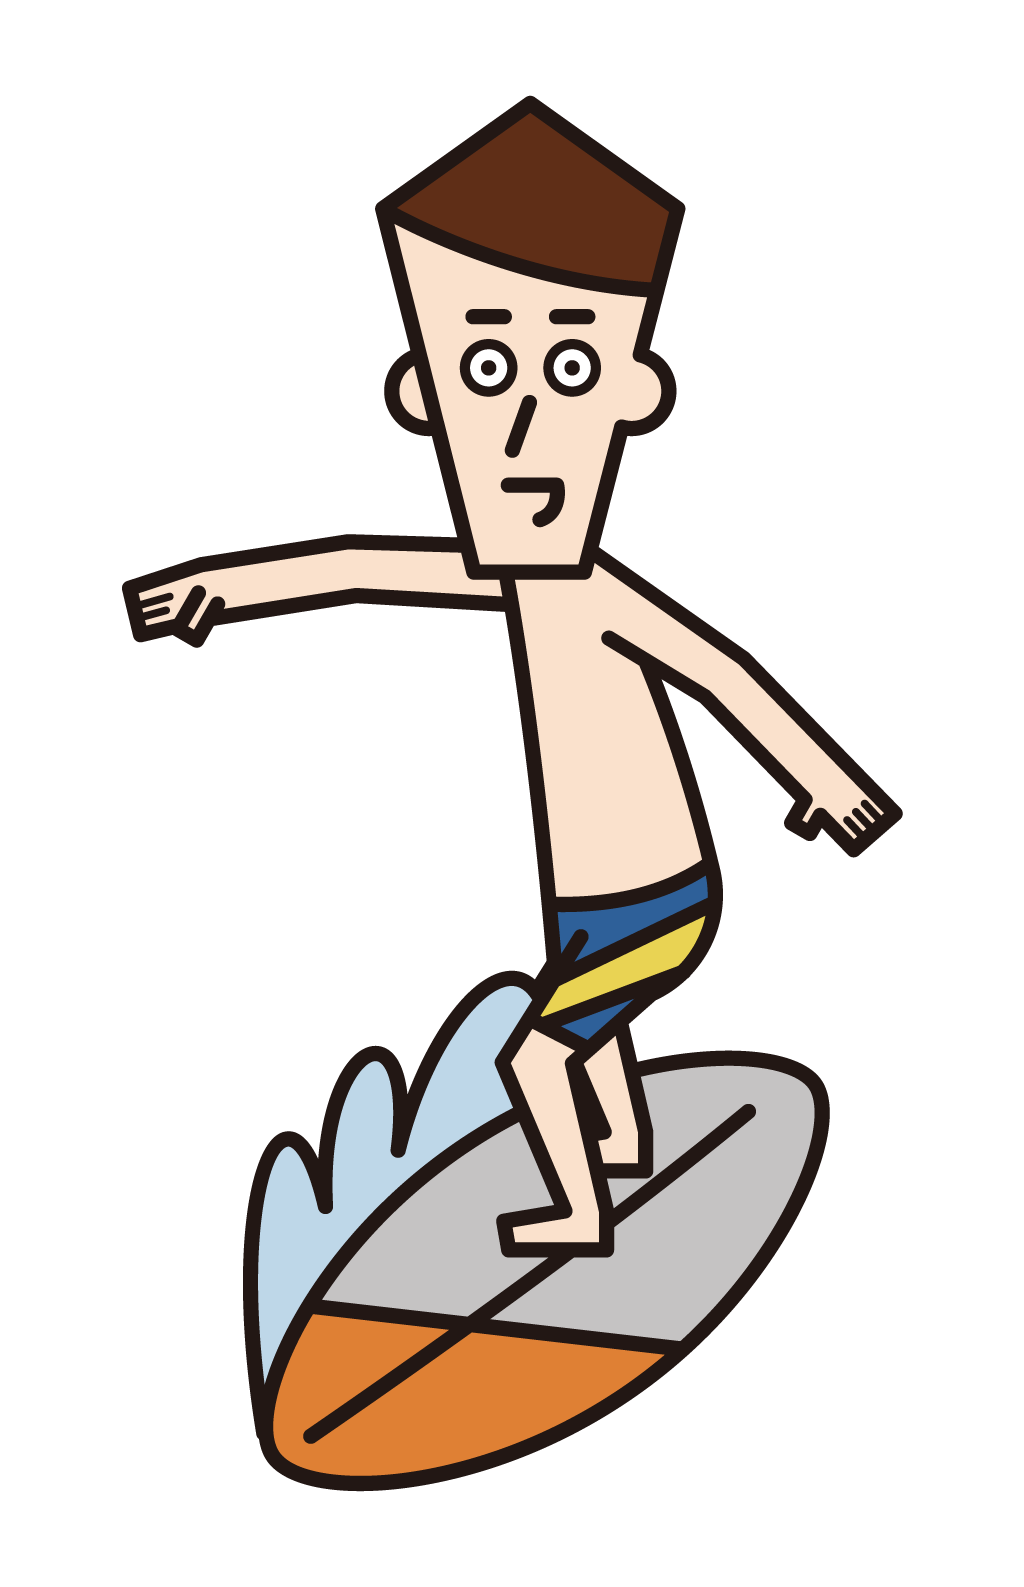 서핑 플레이어(남성)의 일러스트